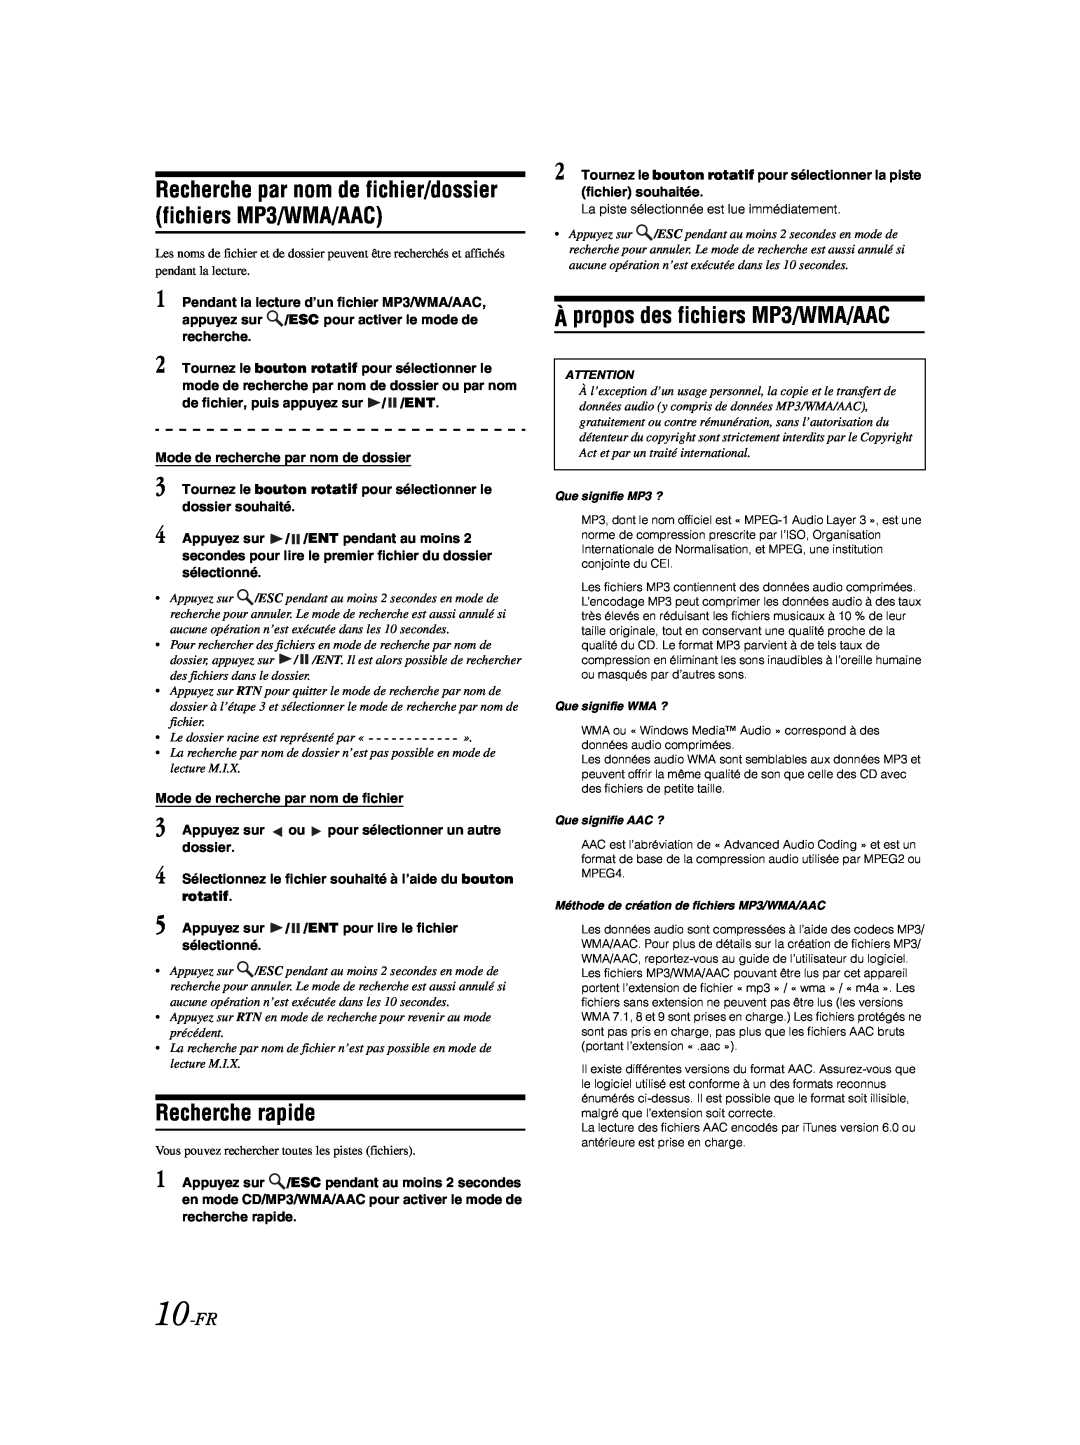 Alpine CDE-9881 owner manual Recherche rapide, À propos des fichiers MP3/WMA/AAC, 10-FR 